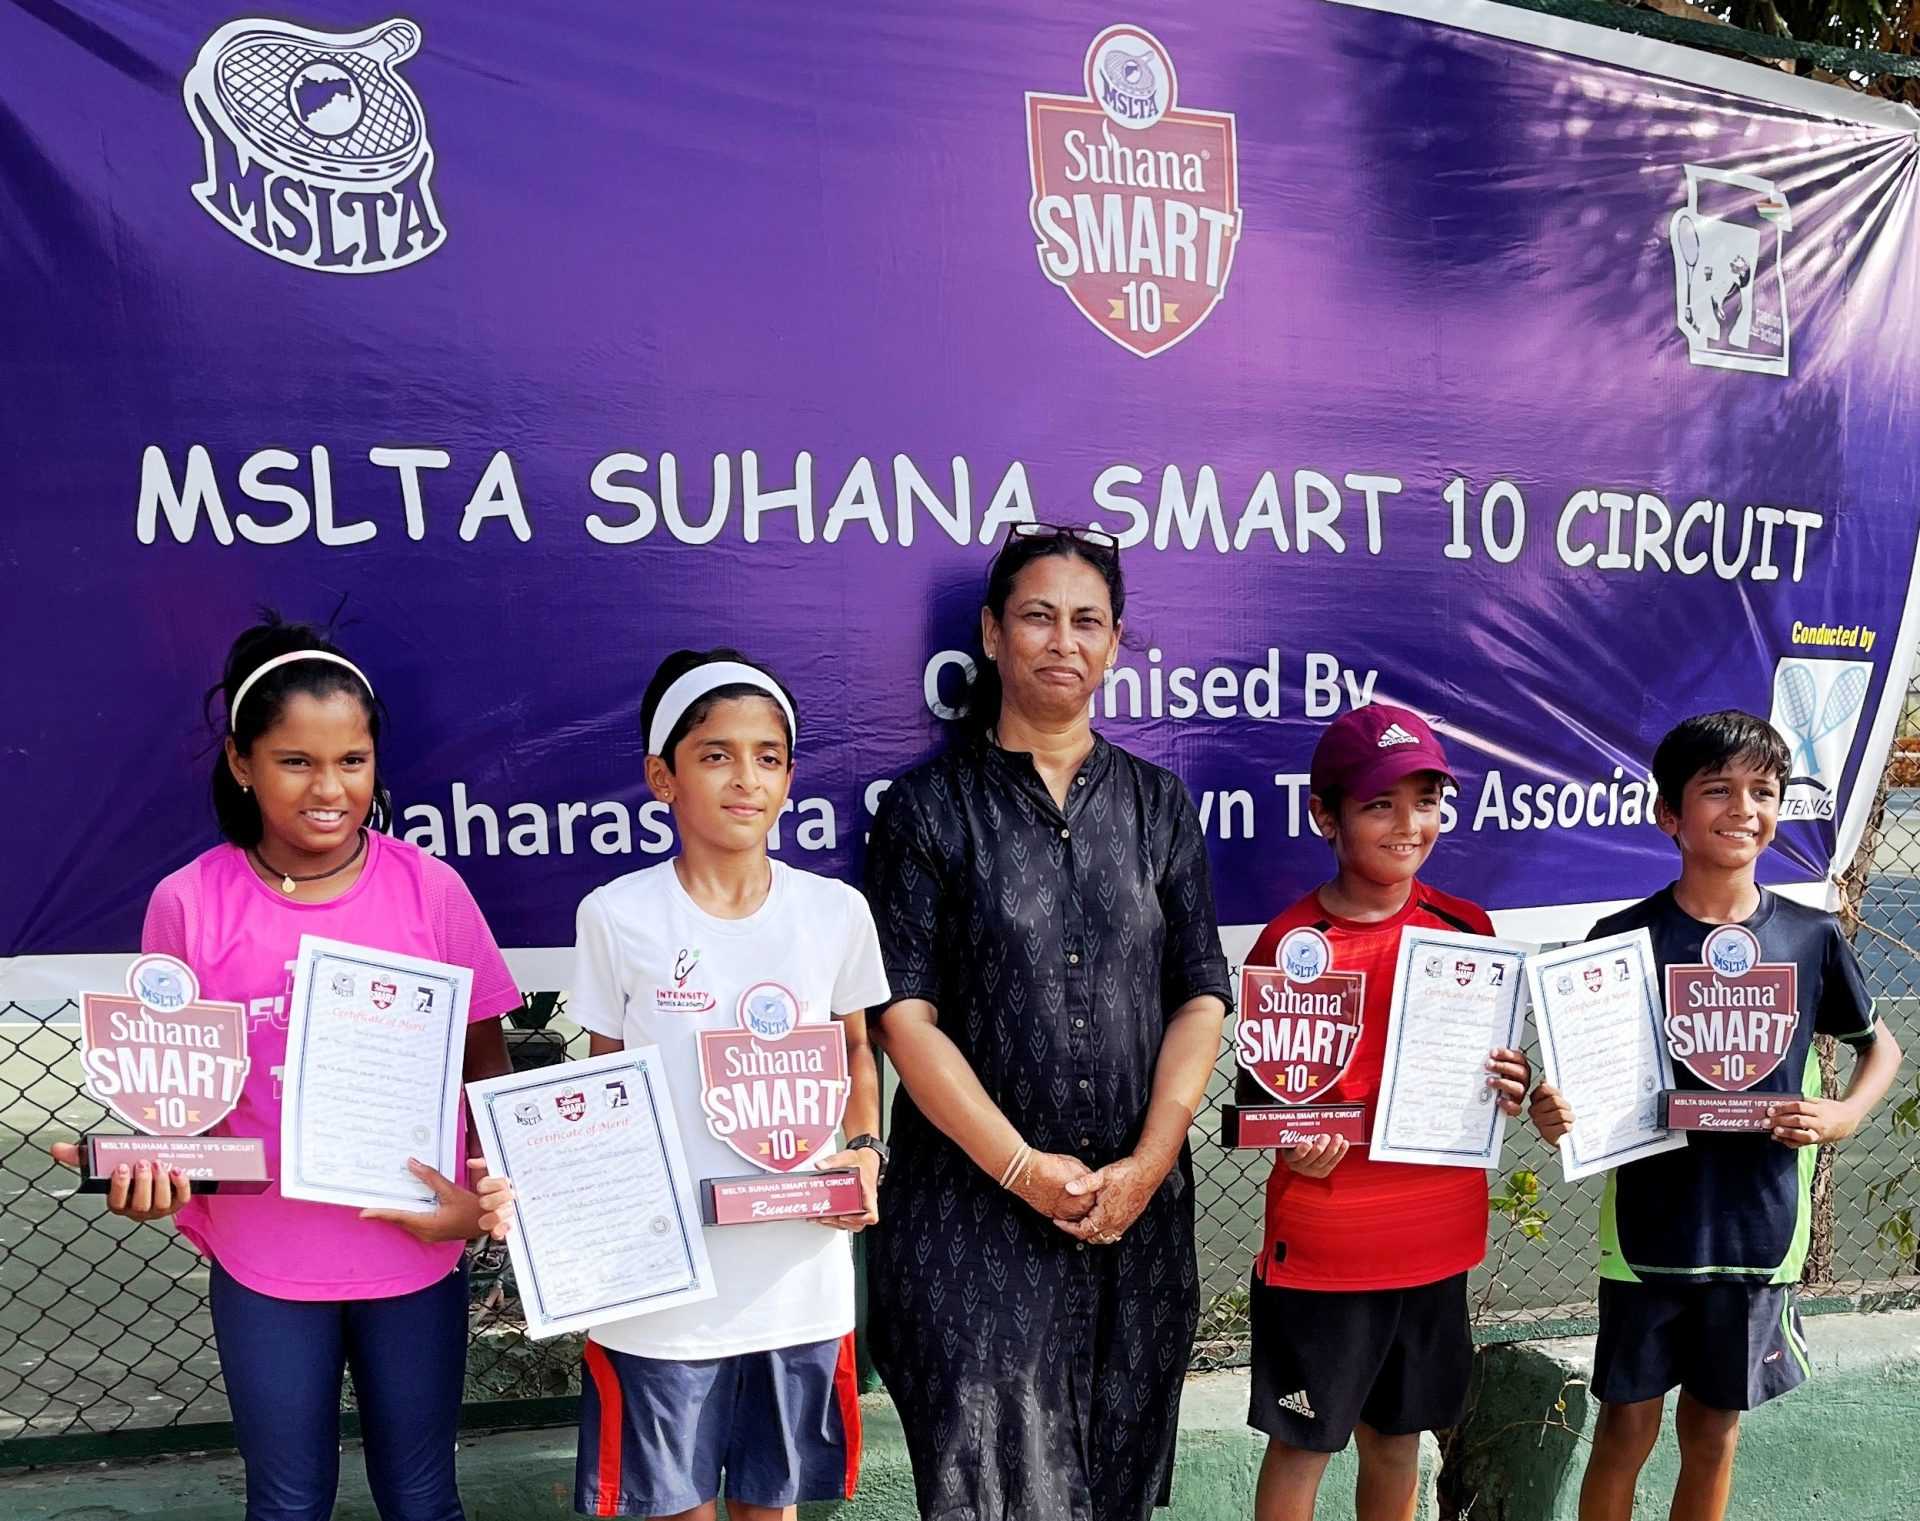 एमएसएलटीए सुहाना स्मार्ट 10वर्षाखालील टेनिस सर्किट स्पर्धेत मुंबईच्या तमन्ना नायर, आरव छल्लाणी यांना विजेतेपद 